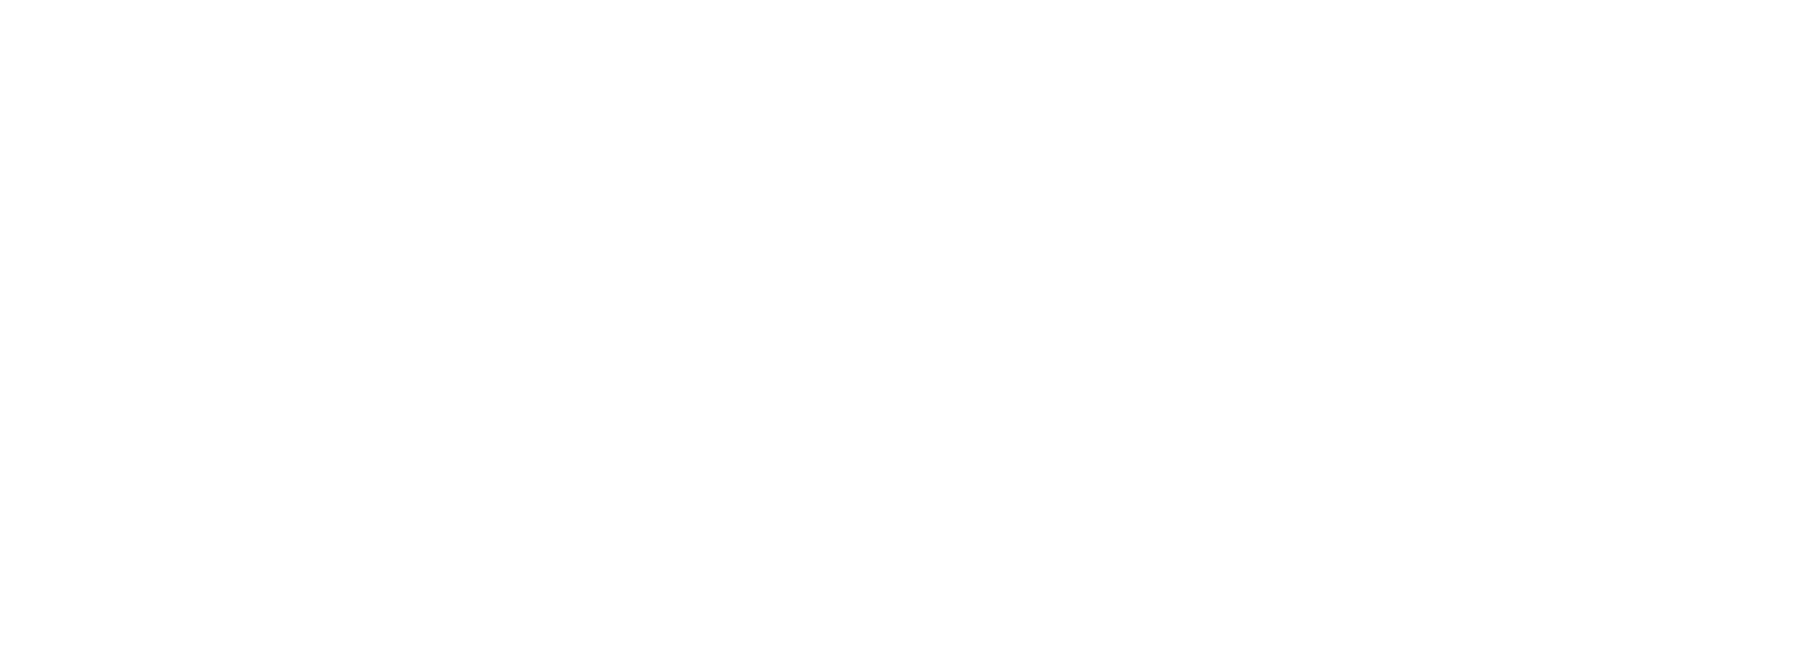 ial-logo